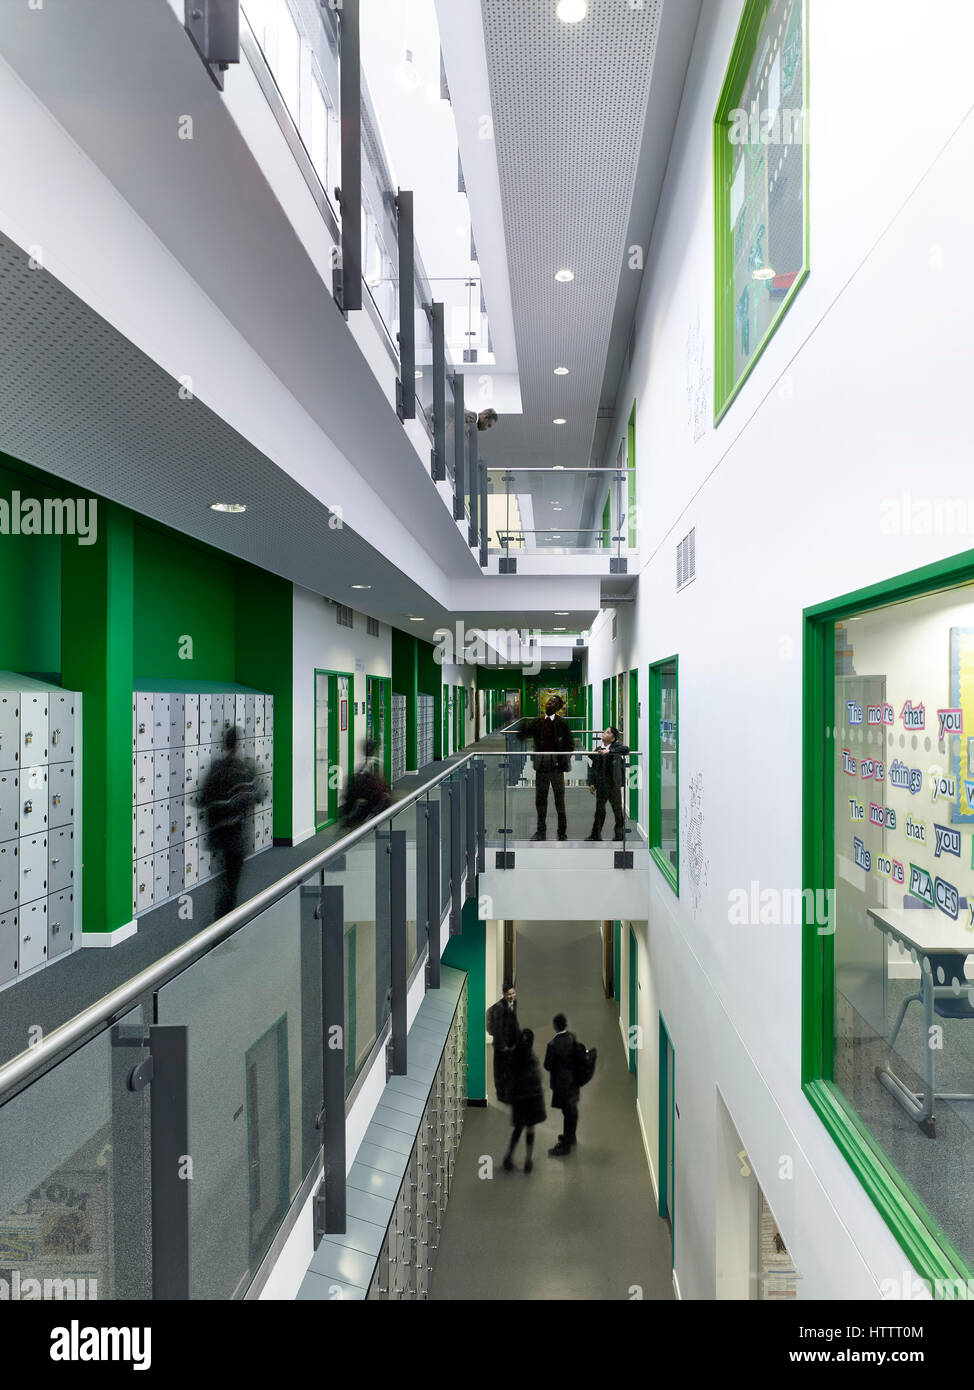 Licht gefüllt Korridor im Einsatz. Kensington Aldridge Academy, London, Vereinigtes Königreich. Architekt: Studio E Architekten, 2016. Stockfoto